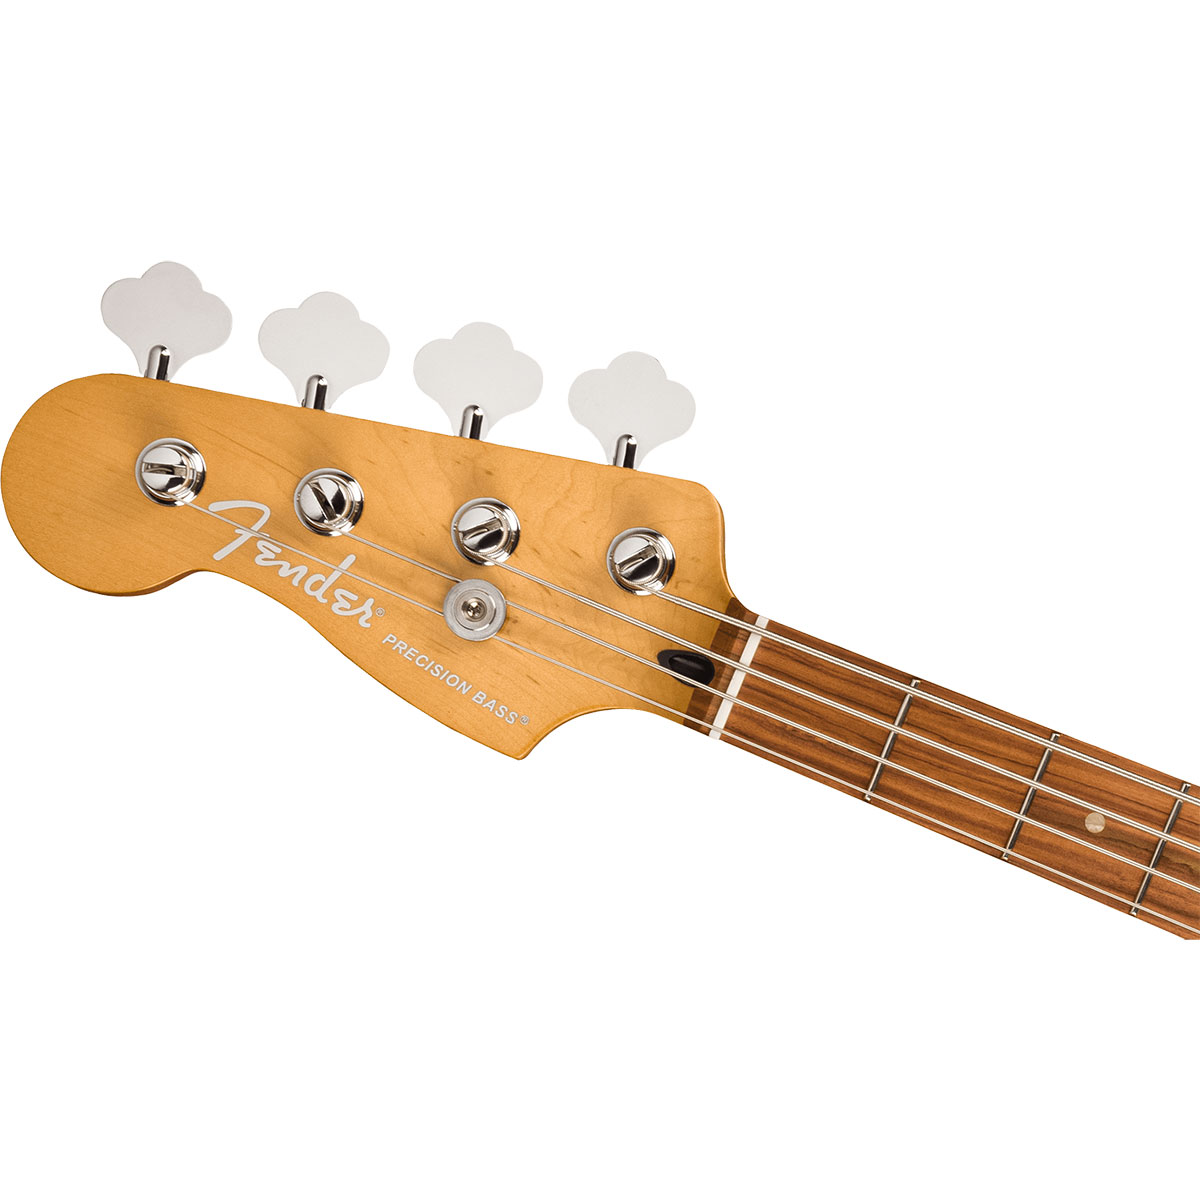 Fender Player Plus Precision Bass Left-Hand 3-Color Sunburst